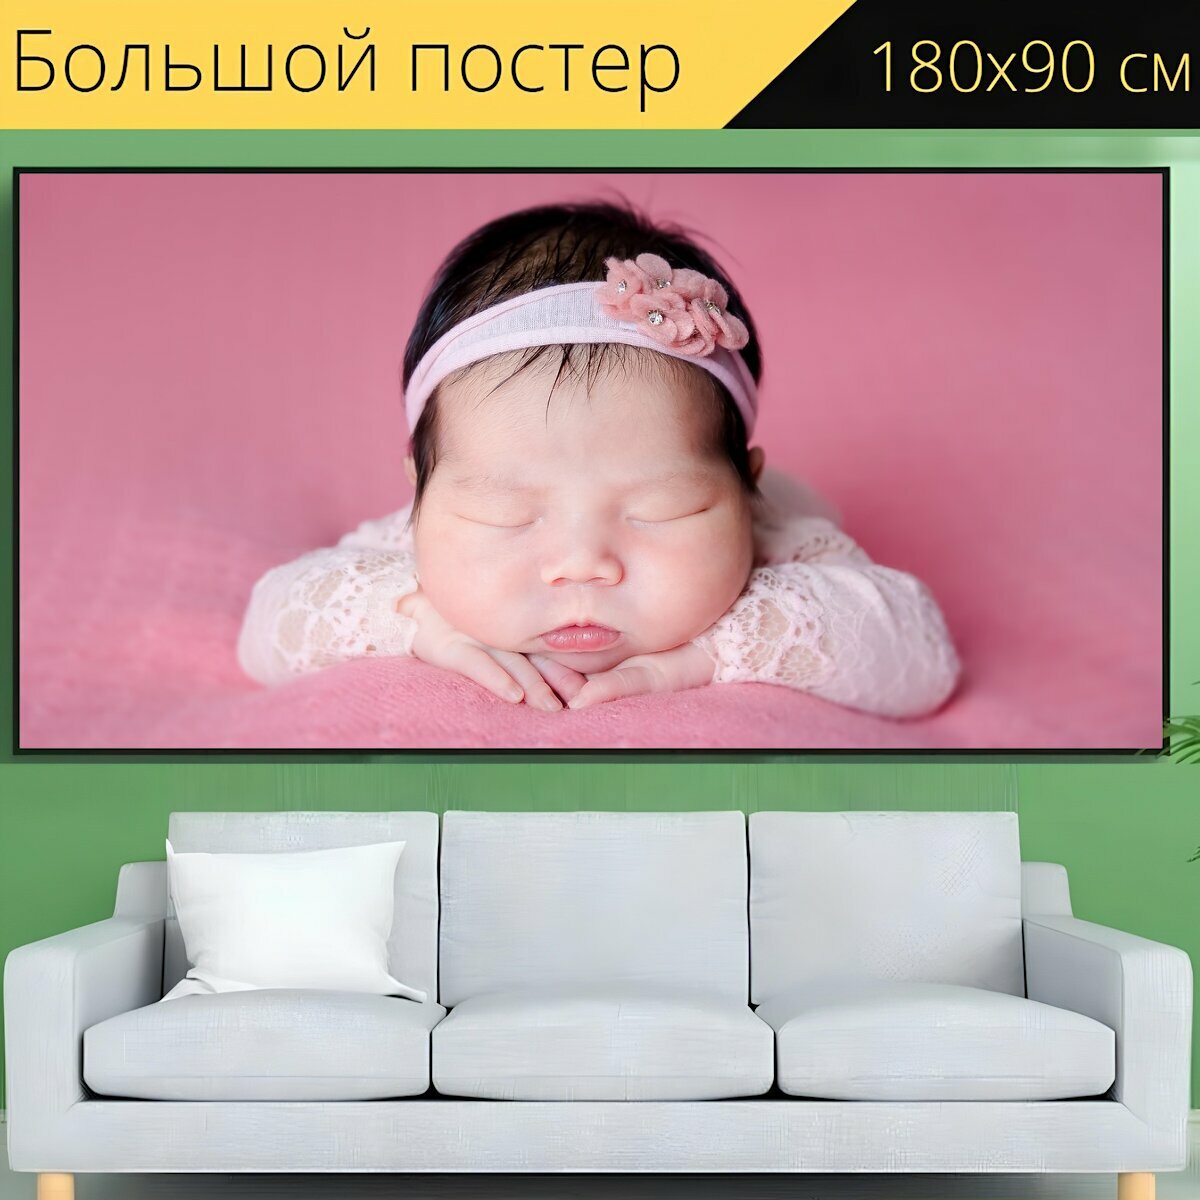 Большой постер "Новорожденный, детка, ребенок" 180 x 90 см. для интерьера